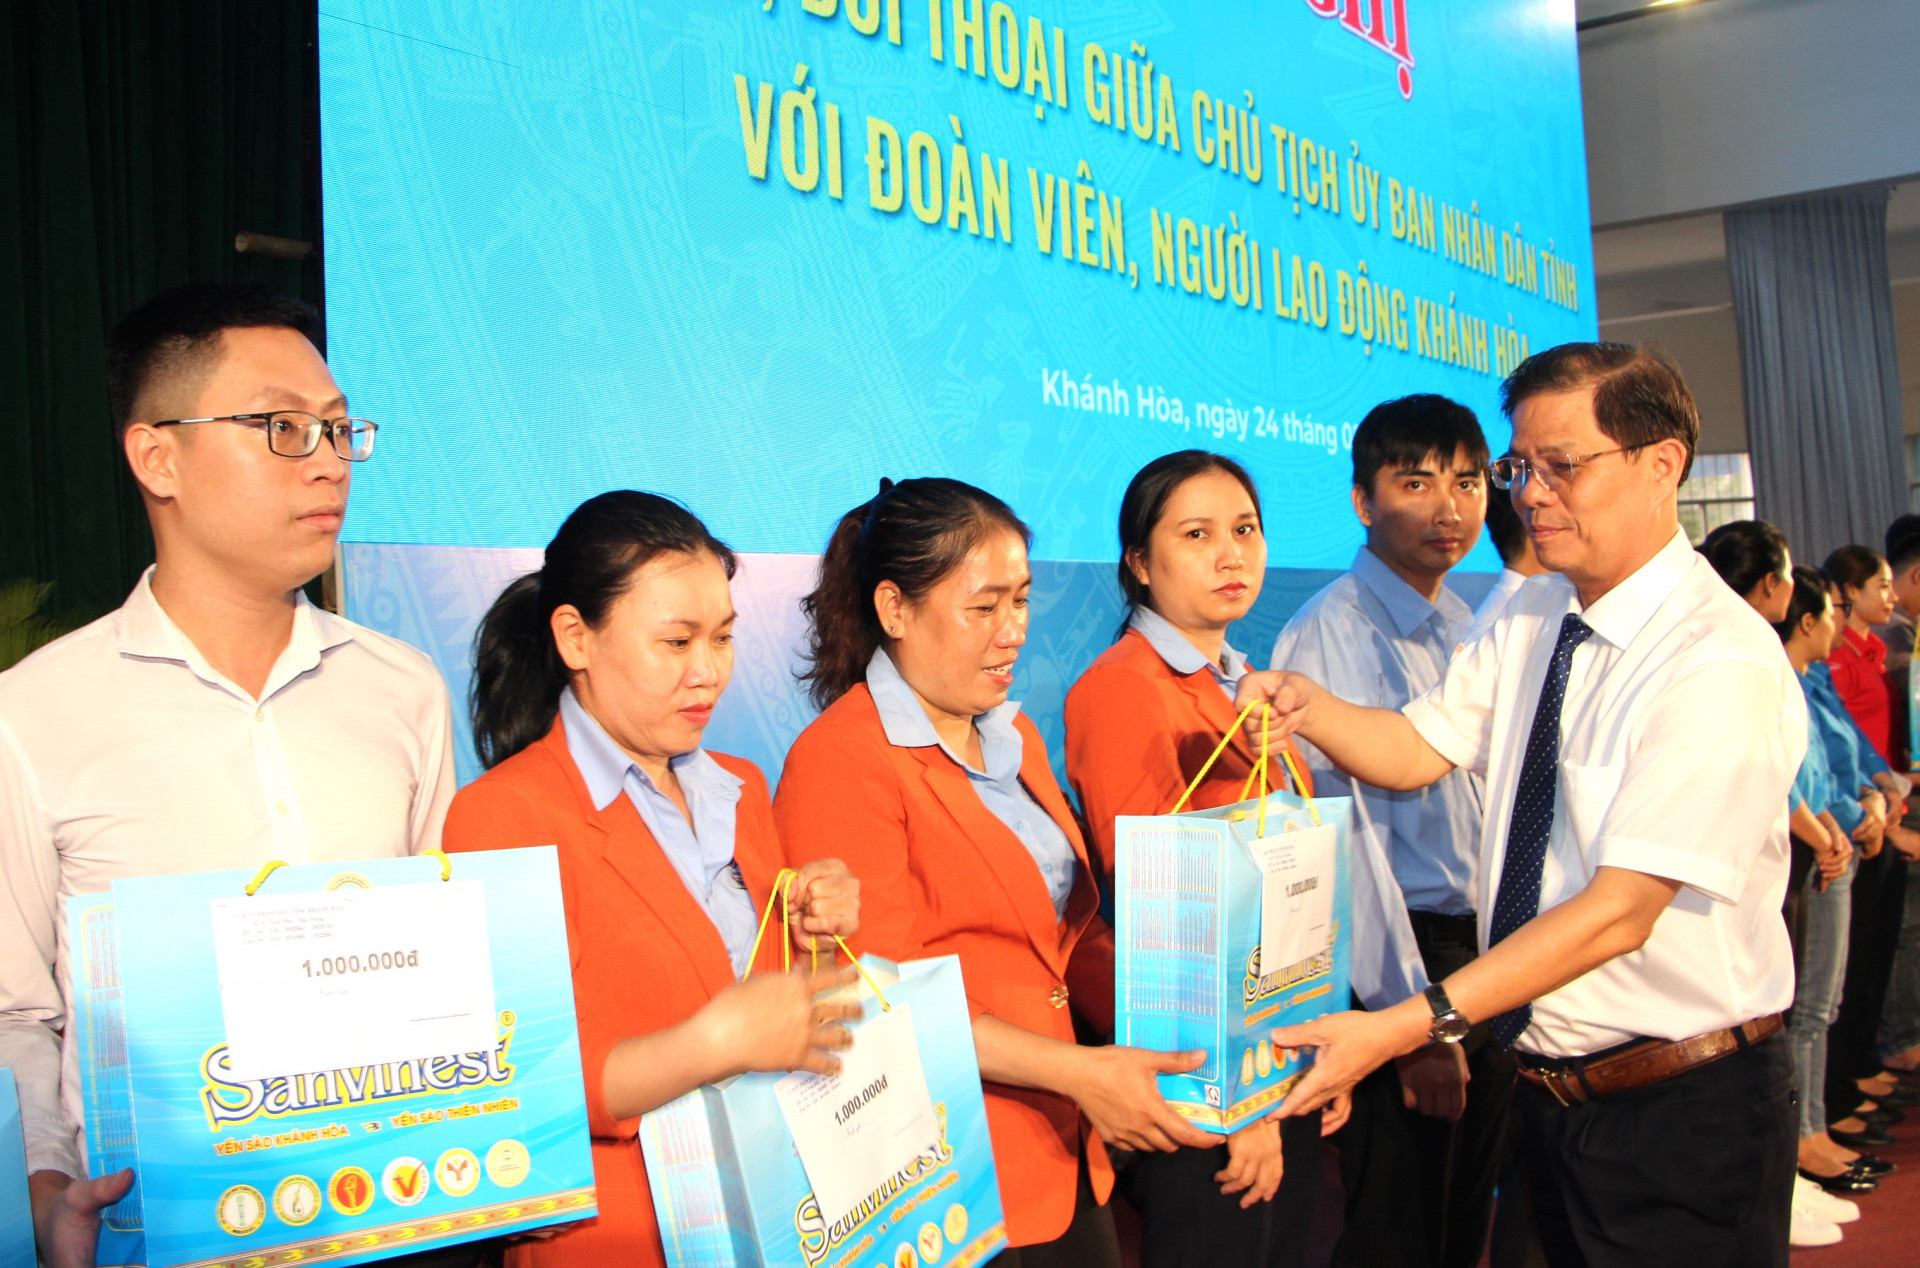 Đồng chí Nguyễn Tấn Tuân trao quà cho đoàn viên, người lao động.